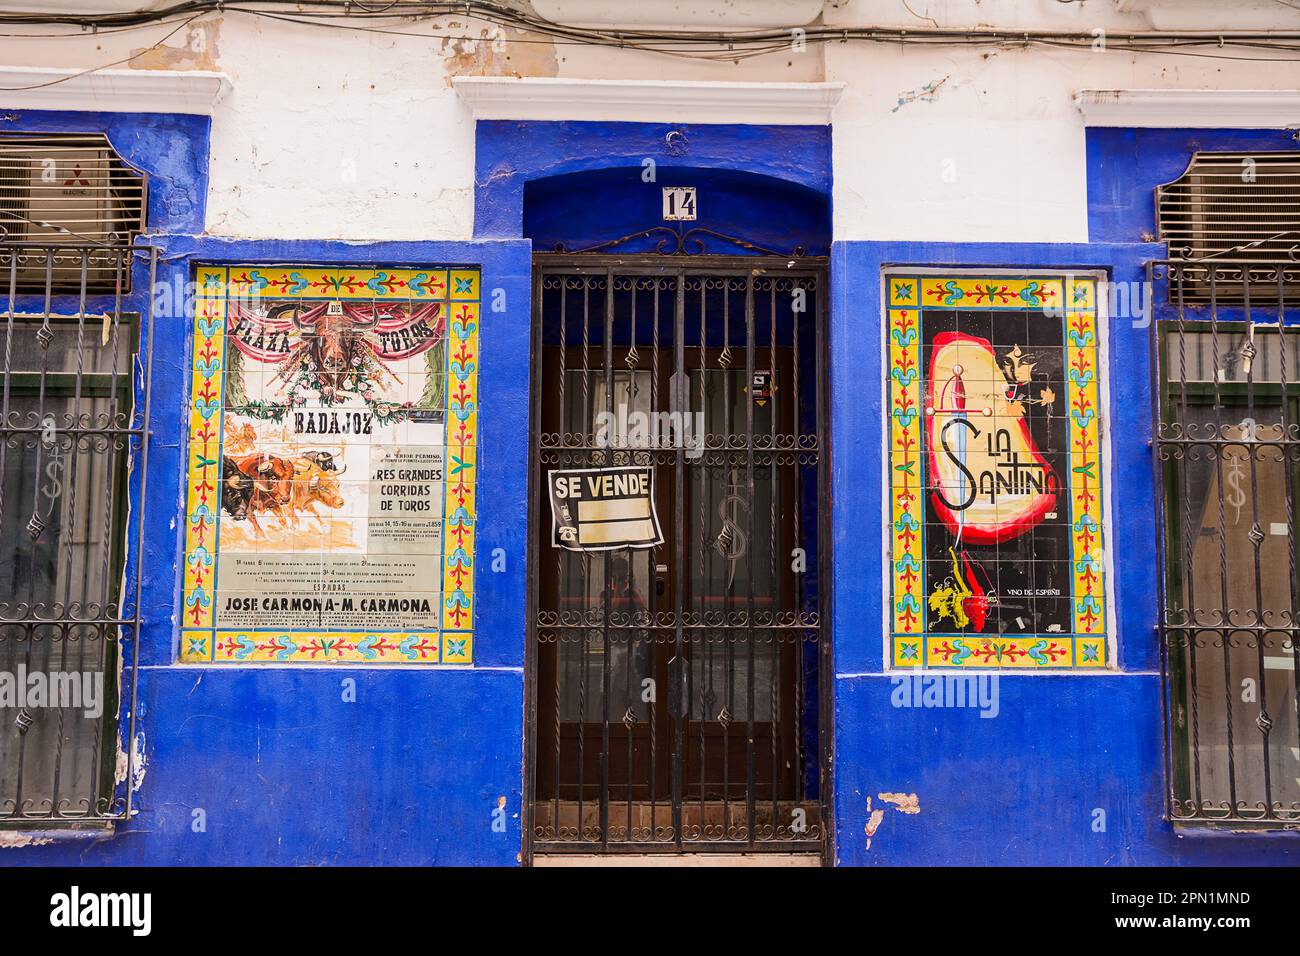 Badajoz, Spanien - 24. Juni 2022: Eingangshalle mit geschlossenem Metalltor, Verkaufsankündigung und Retro-Poster für Stierkämpfe Stockfoto